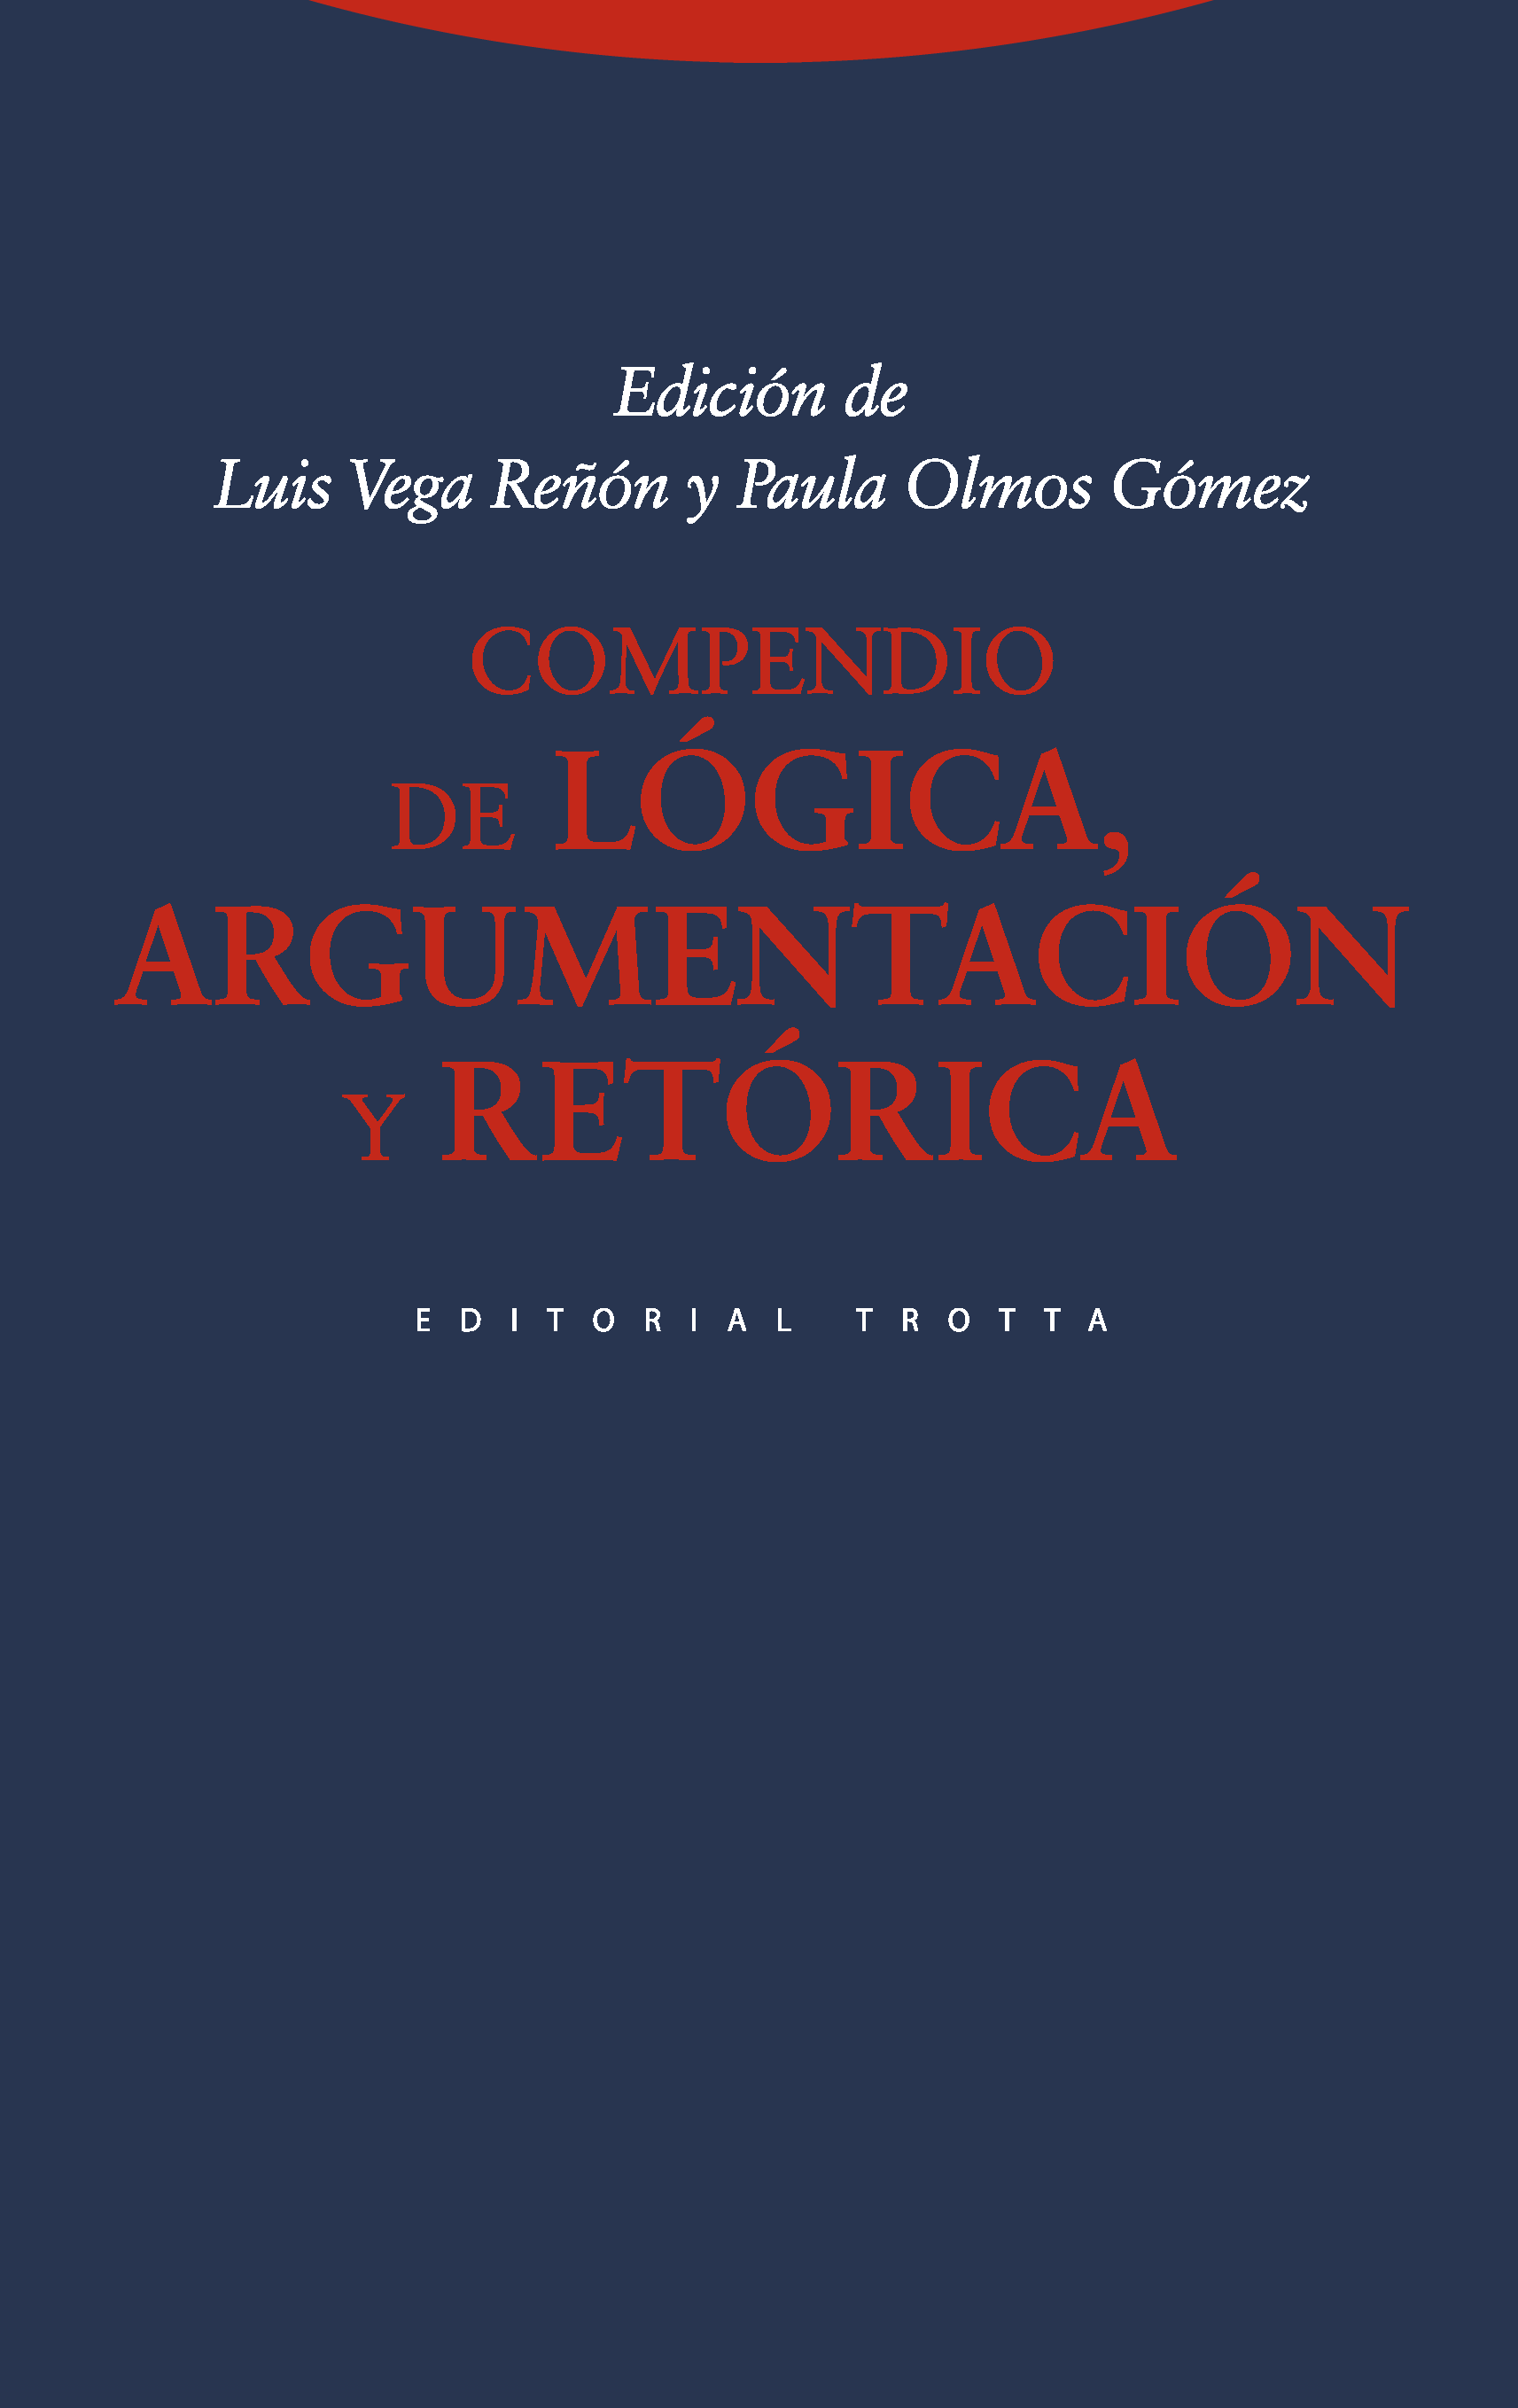 Imagen de portada del libro Compendio de lógica, argumentación y retórica